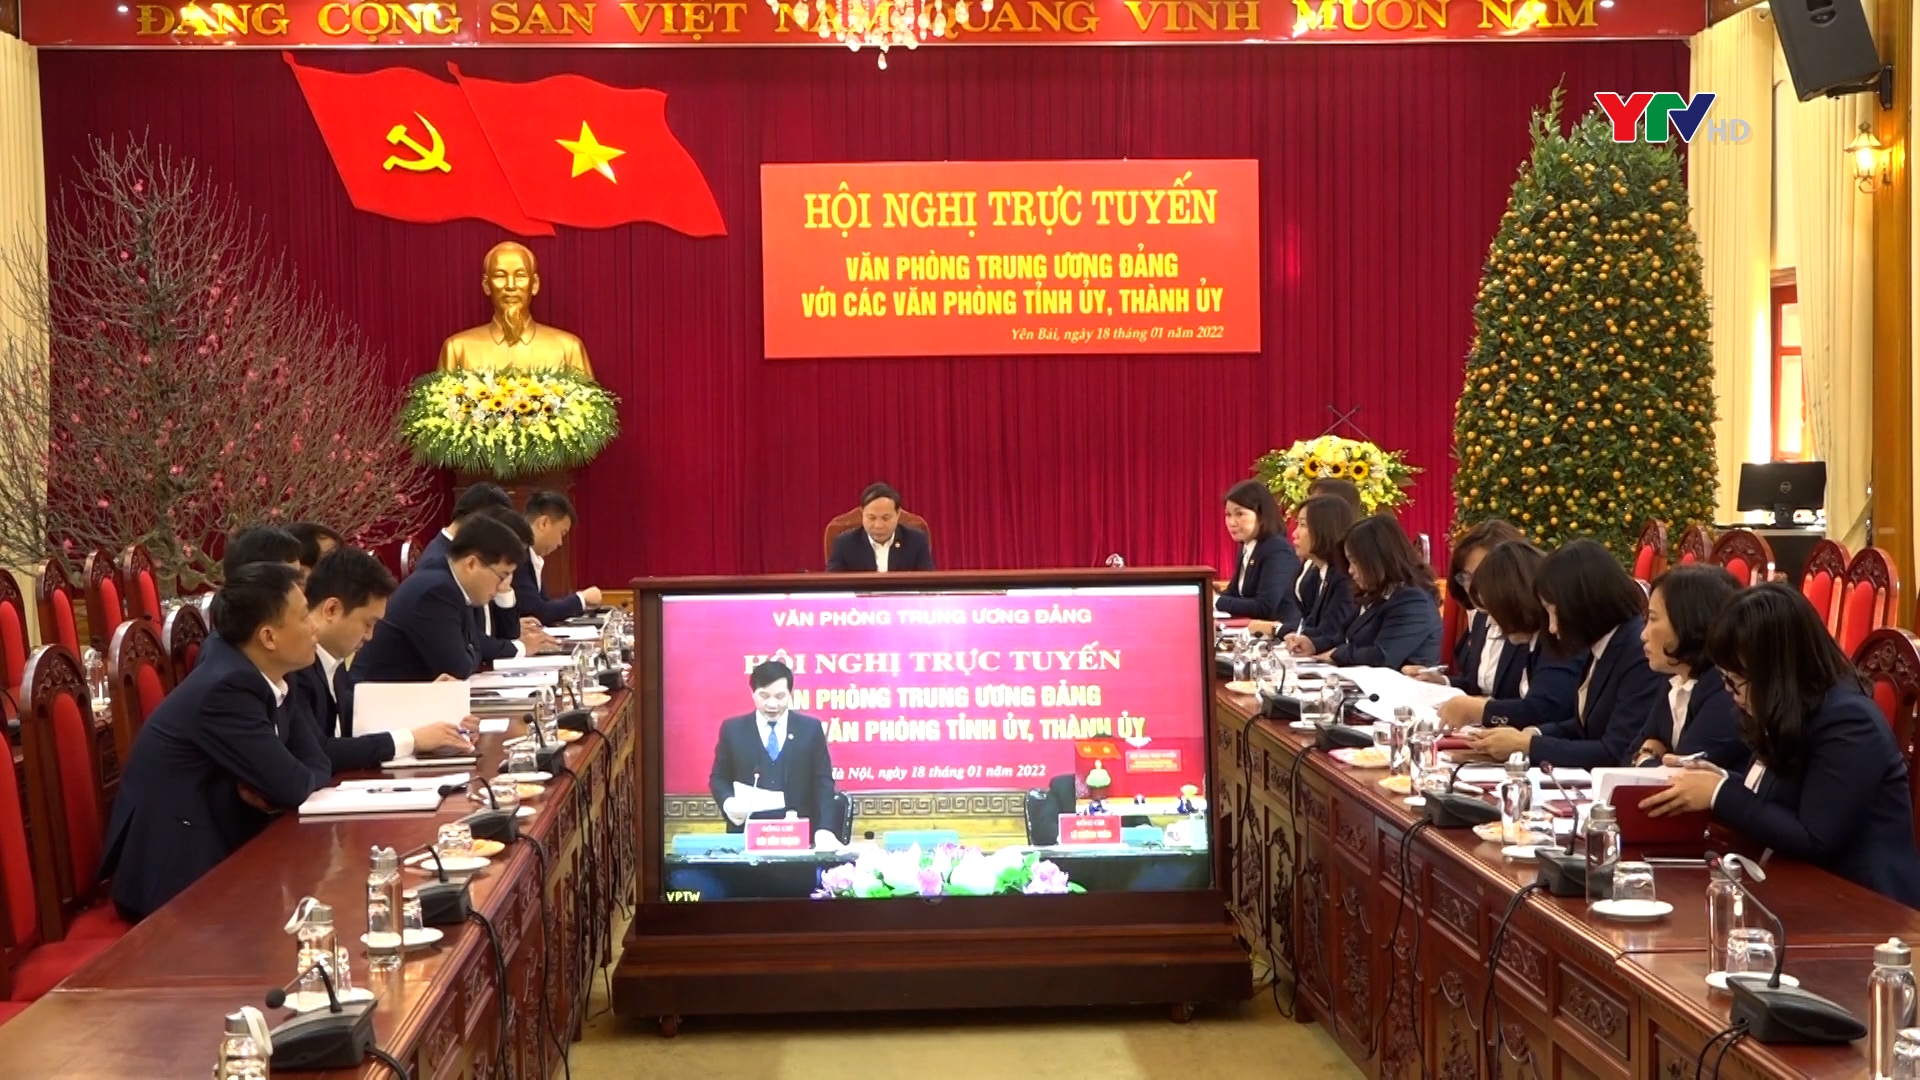 Văn phòng Tỉnh ủy Yên Bái dự Hội nghị trực tuyến triển khai nhiệm vụ năm 2022 do Văn phòng Trung ương Đảng tổ chức